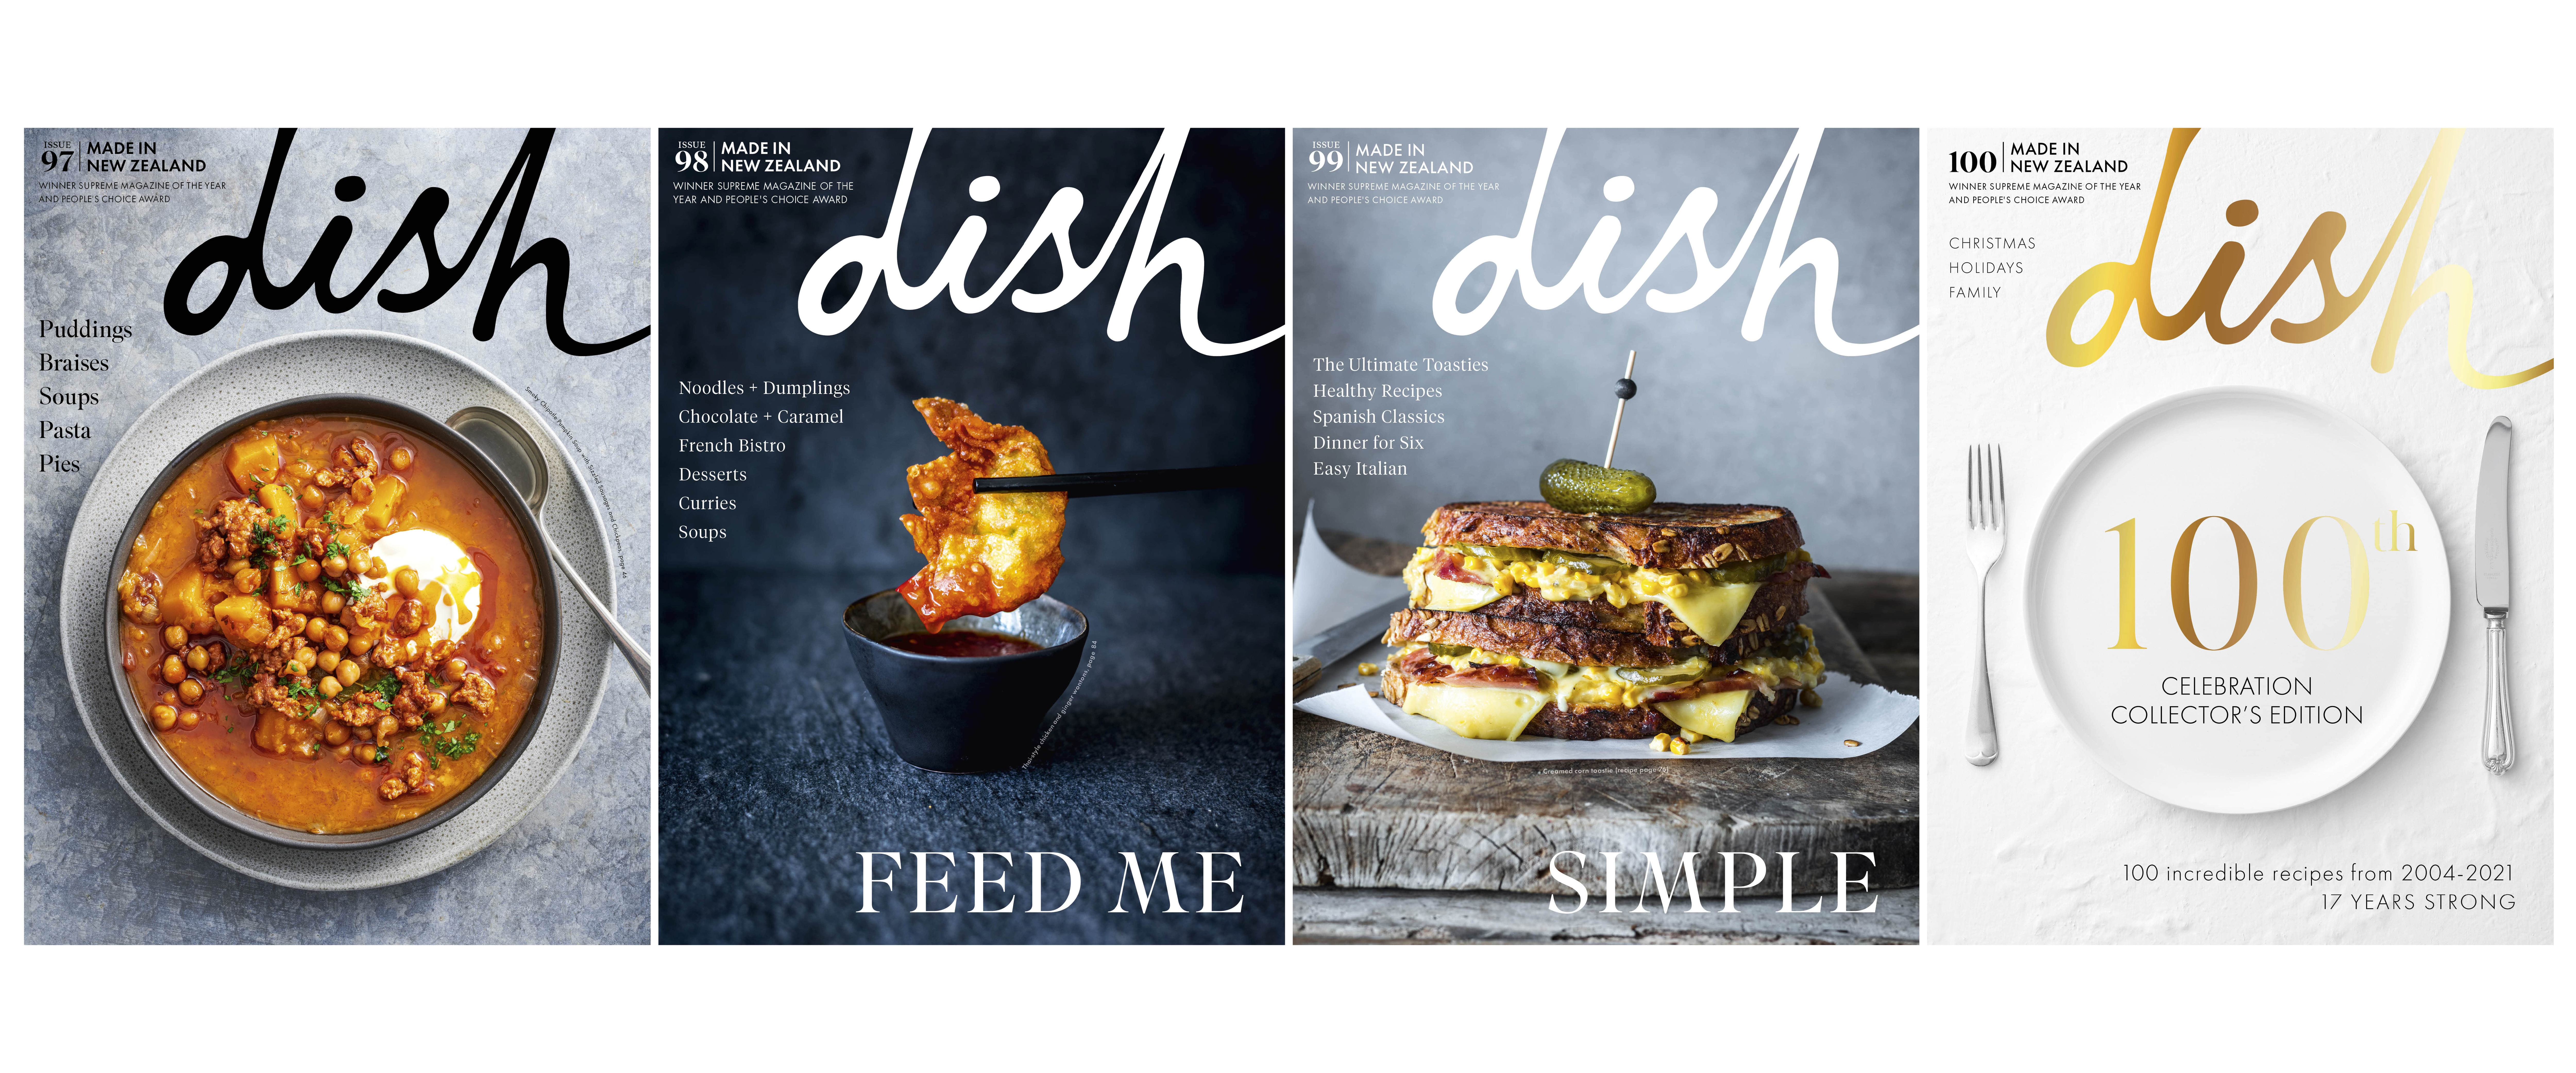 dish magazine covers